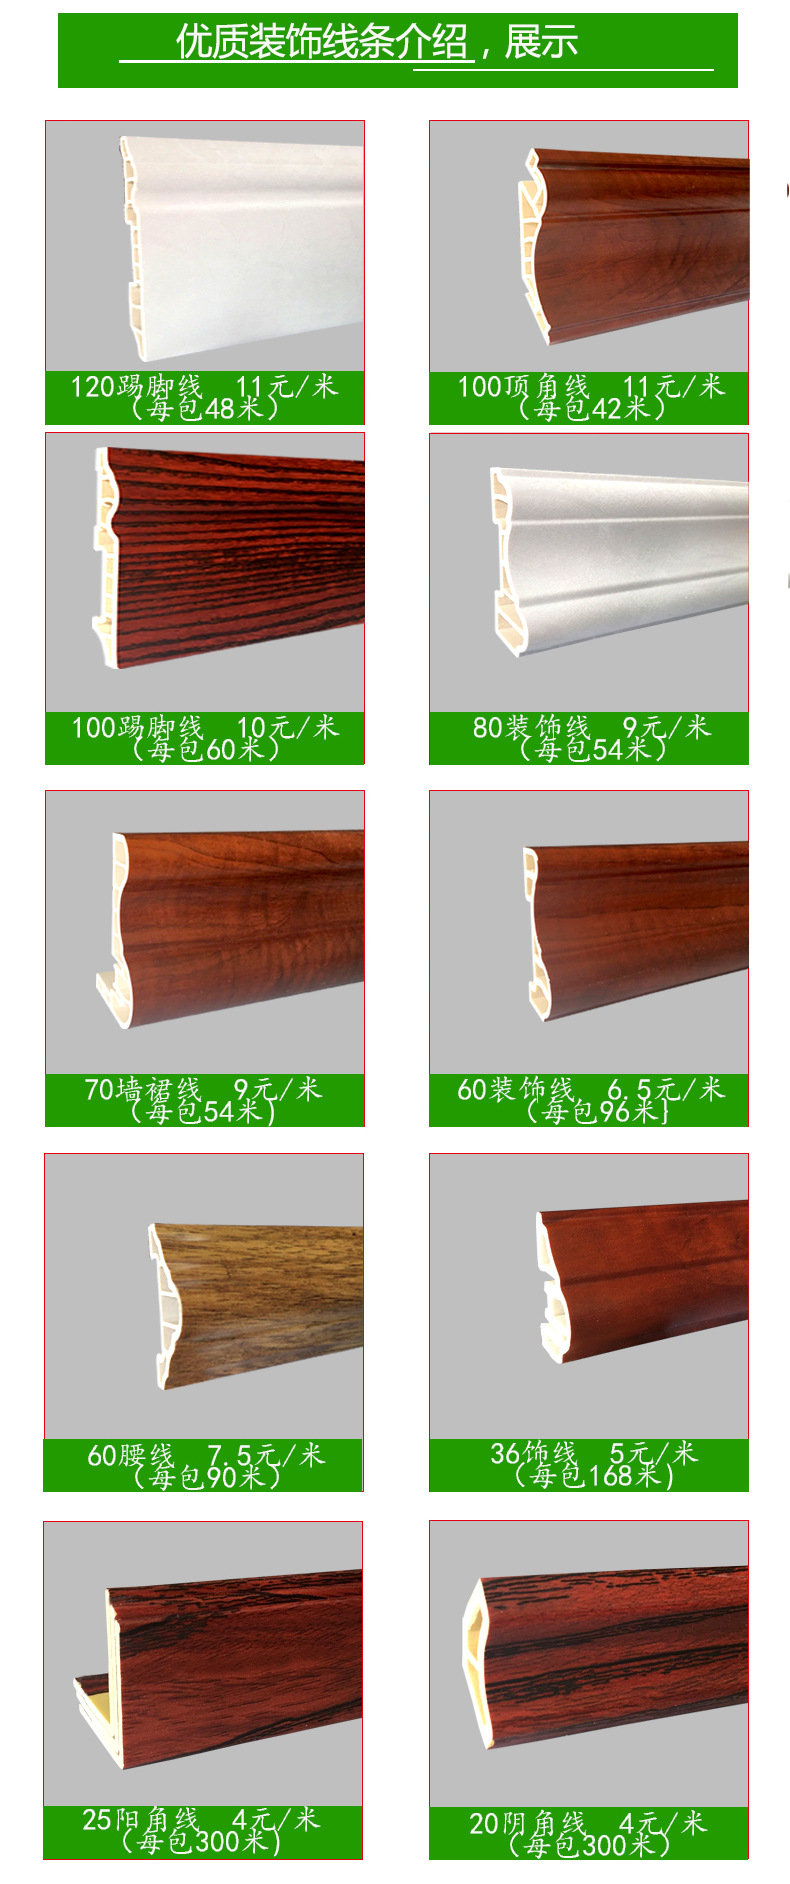 厂家直销明代竹木纤维集成墙板 护墙板装饰线条100顶角线示例图8